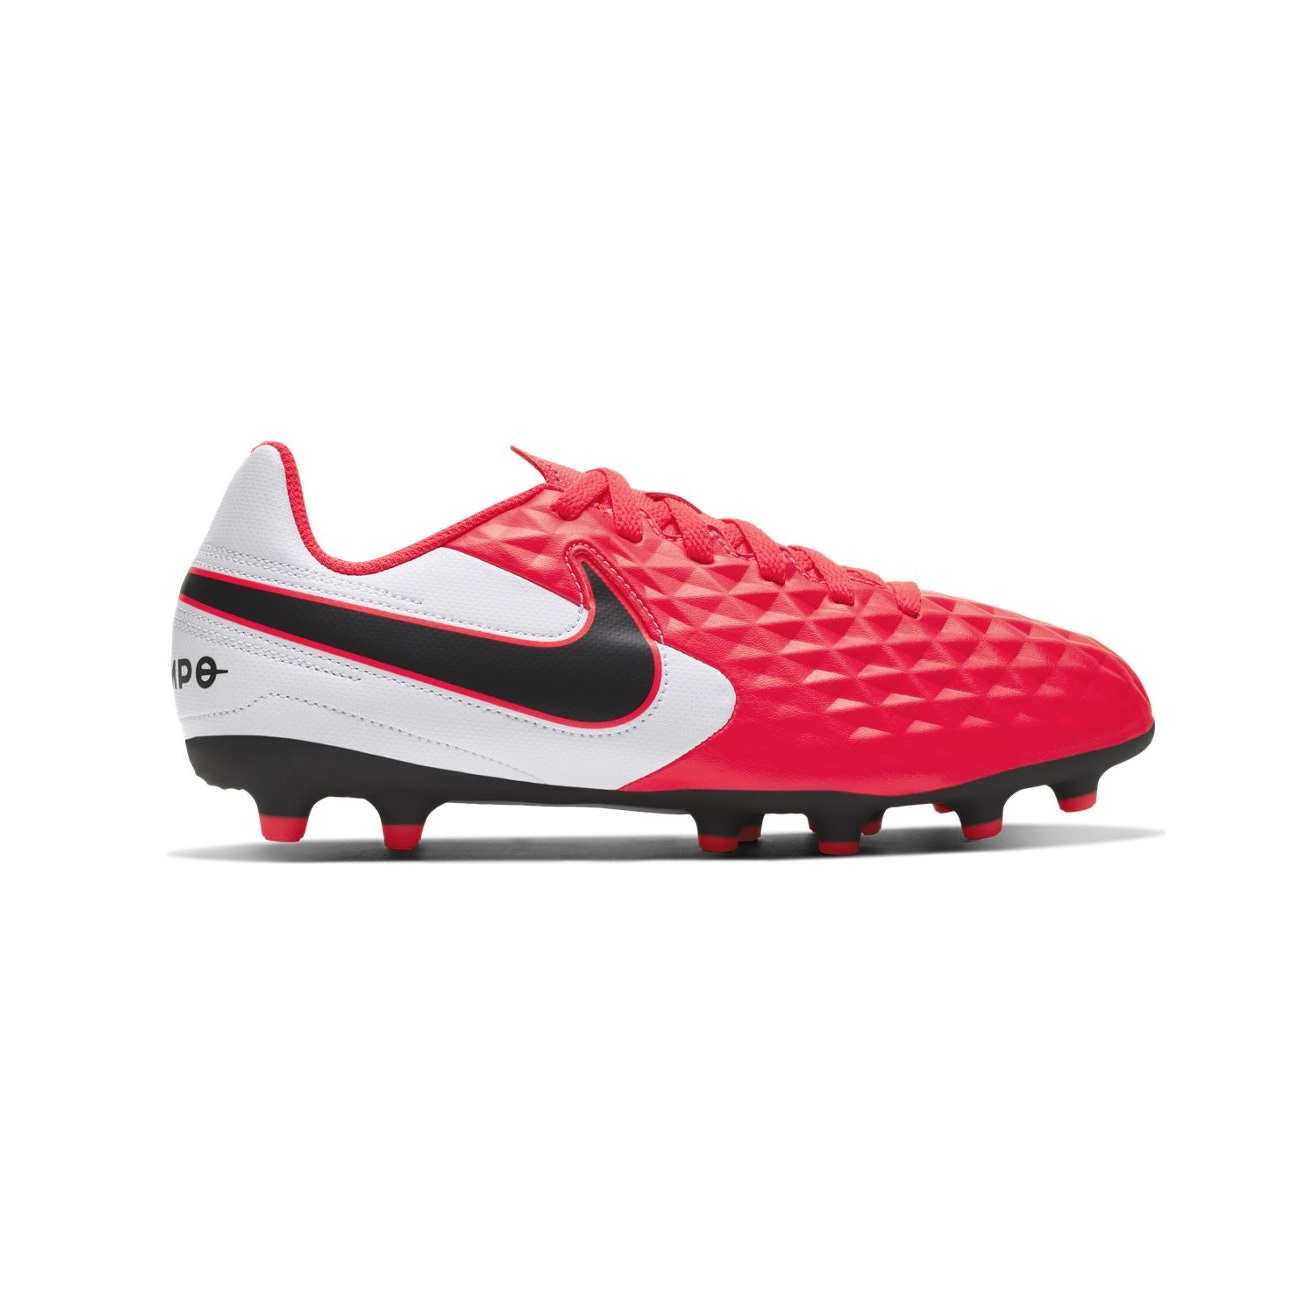 Bota de fútbol - Niño/a - Nike Tiempo Legend 8 - AT5881-606 Ferrer | Tienda online de deportes